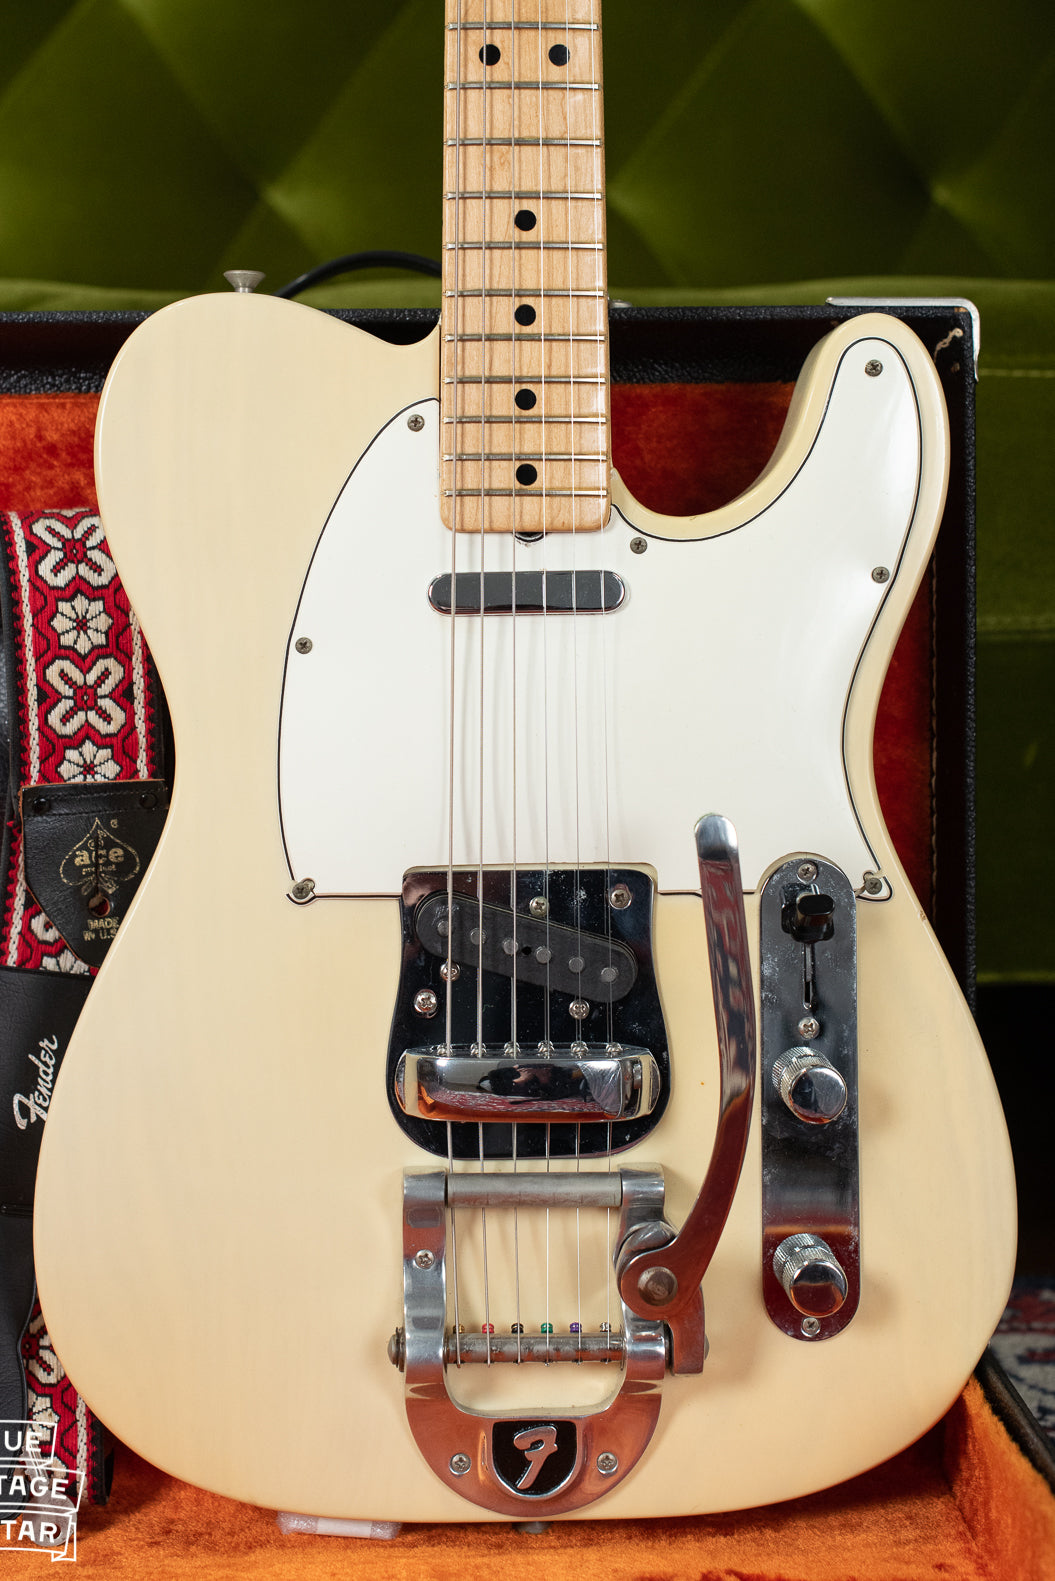 1960s Fender Telecaster guitar